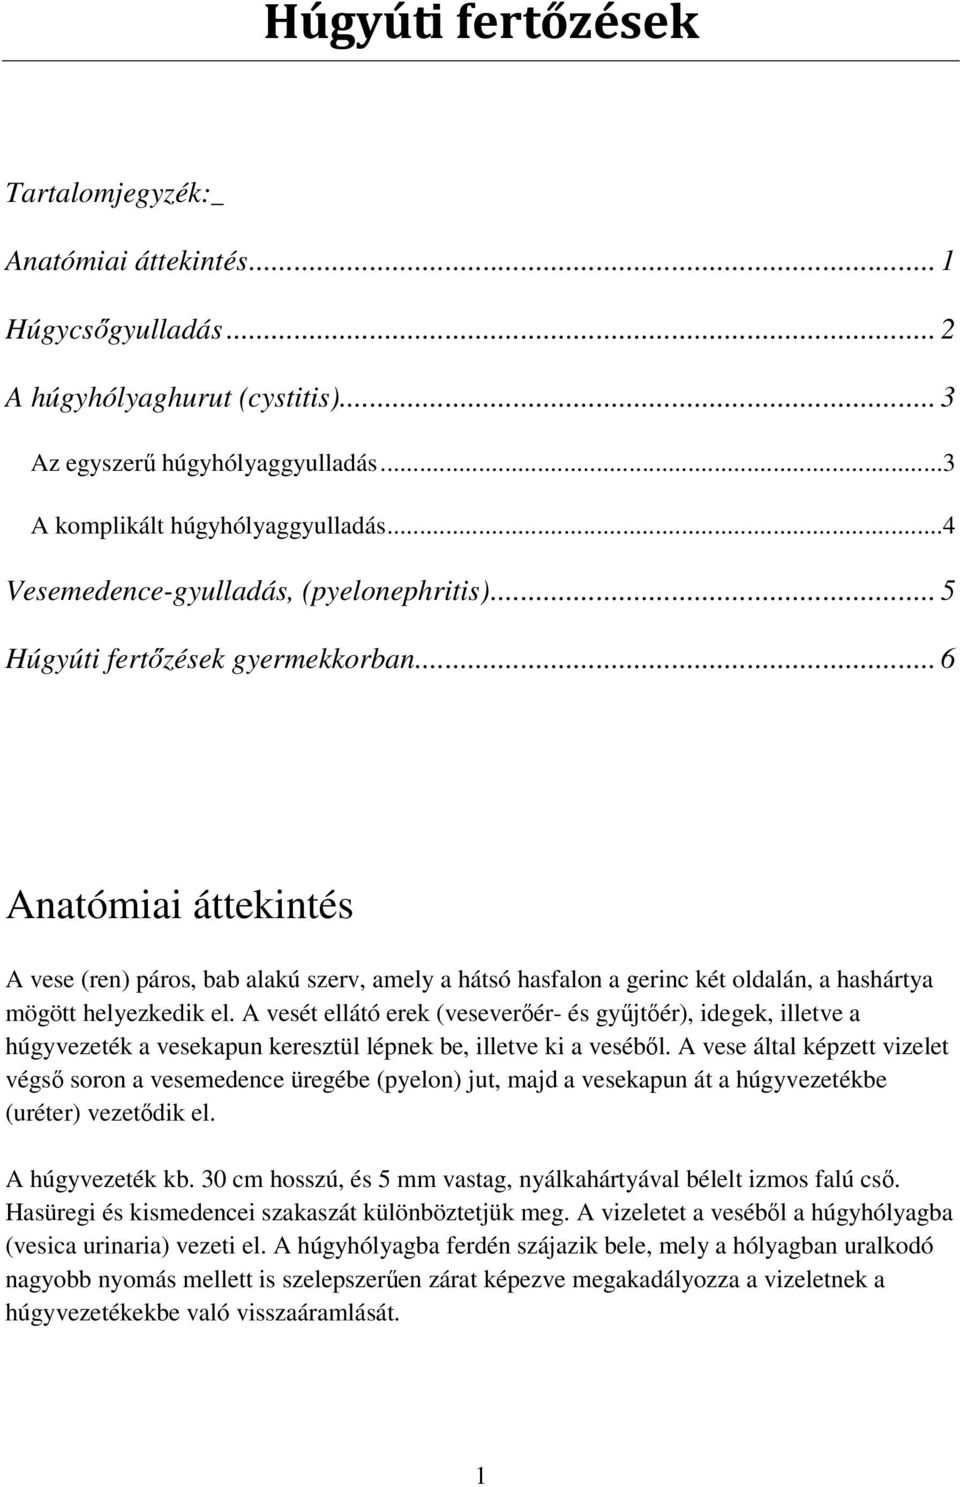 Húgyúti fertőzések. Anatómiai áttekintés A húgyhólyaghurut (cystitis) A  komplikált húgyhólyaggyulladás PDF Ingyenes letöltés